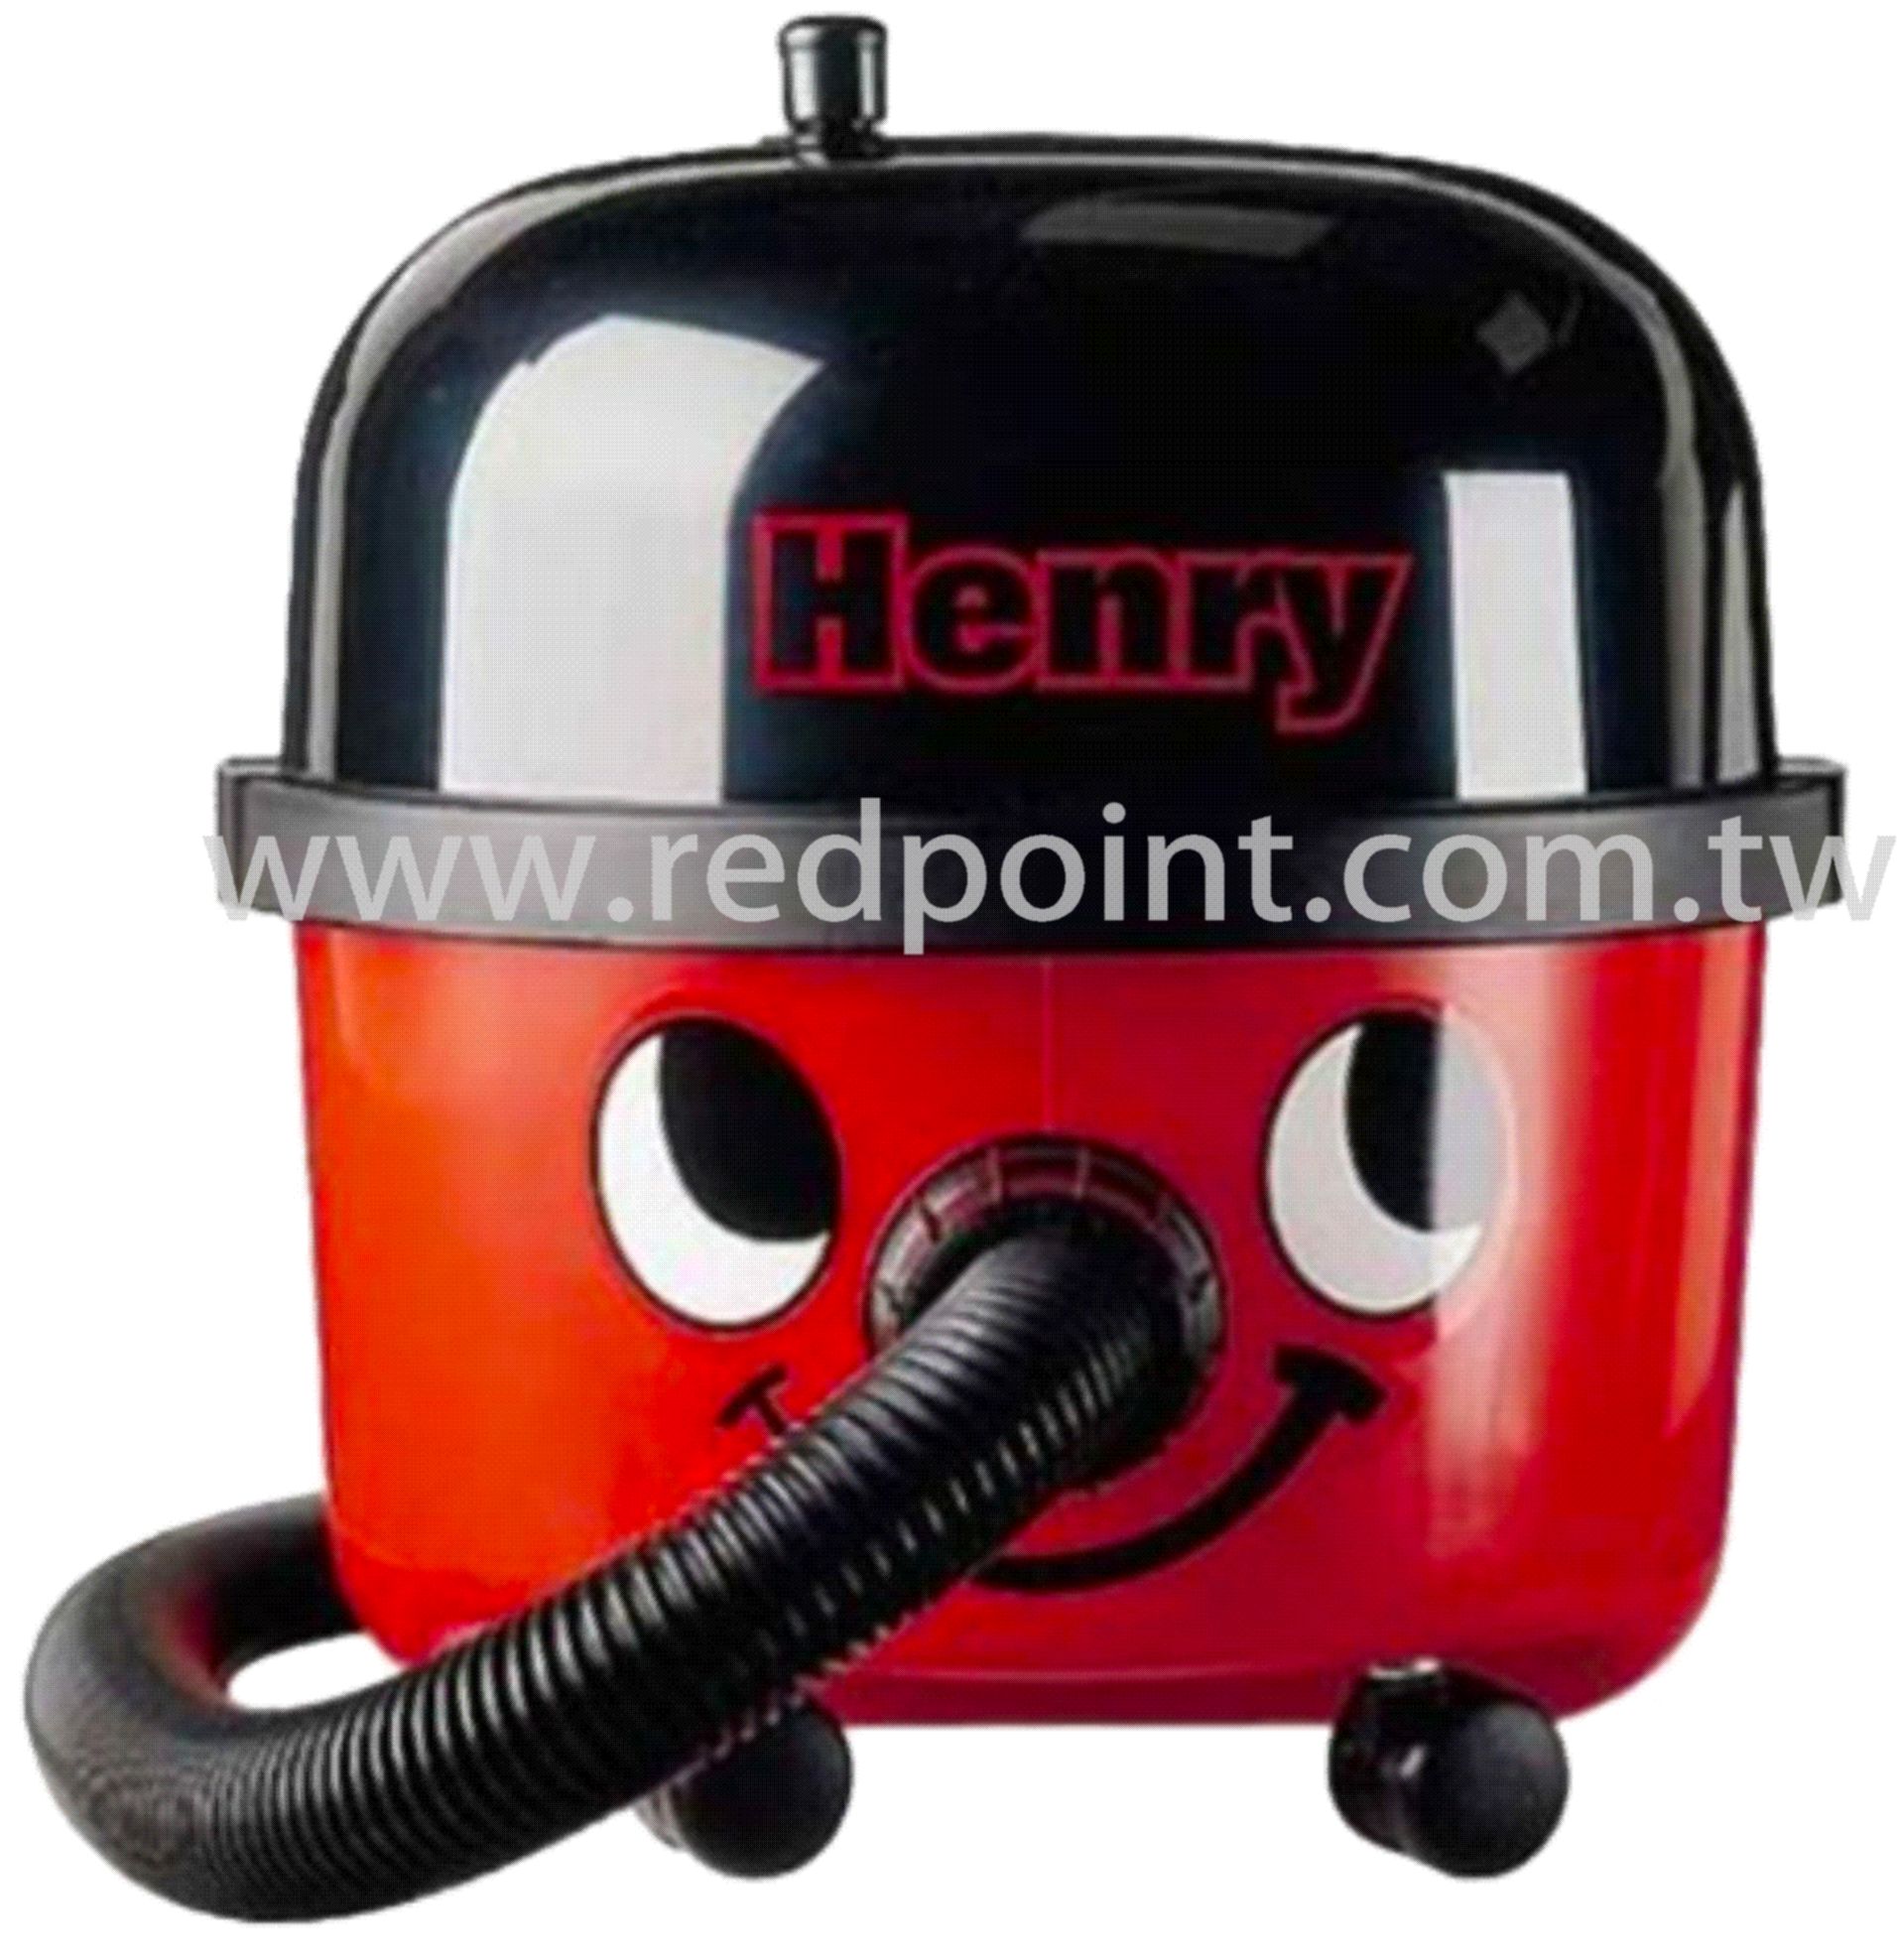 吸塵器,小亨利,Henry,清潔用品,紅點